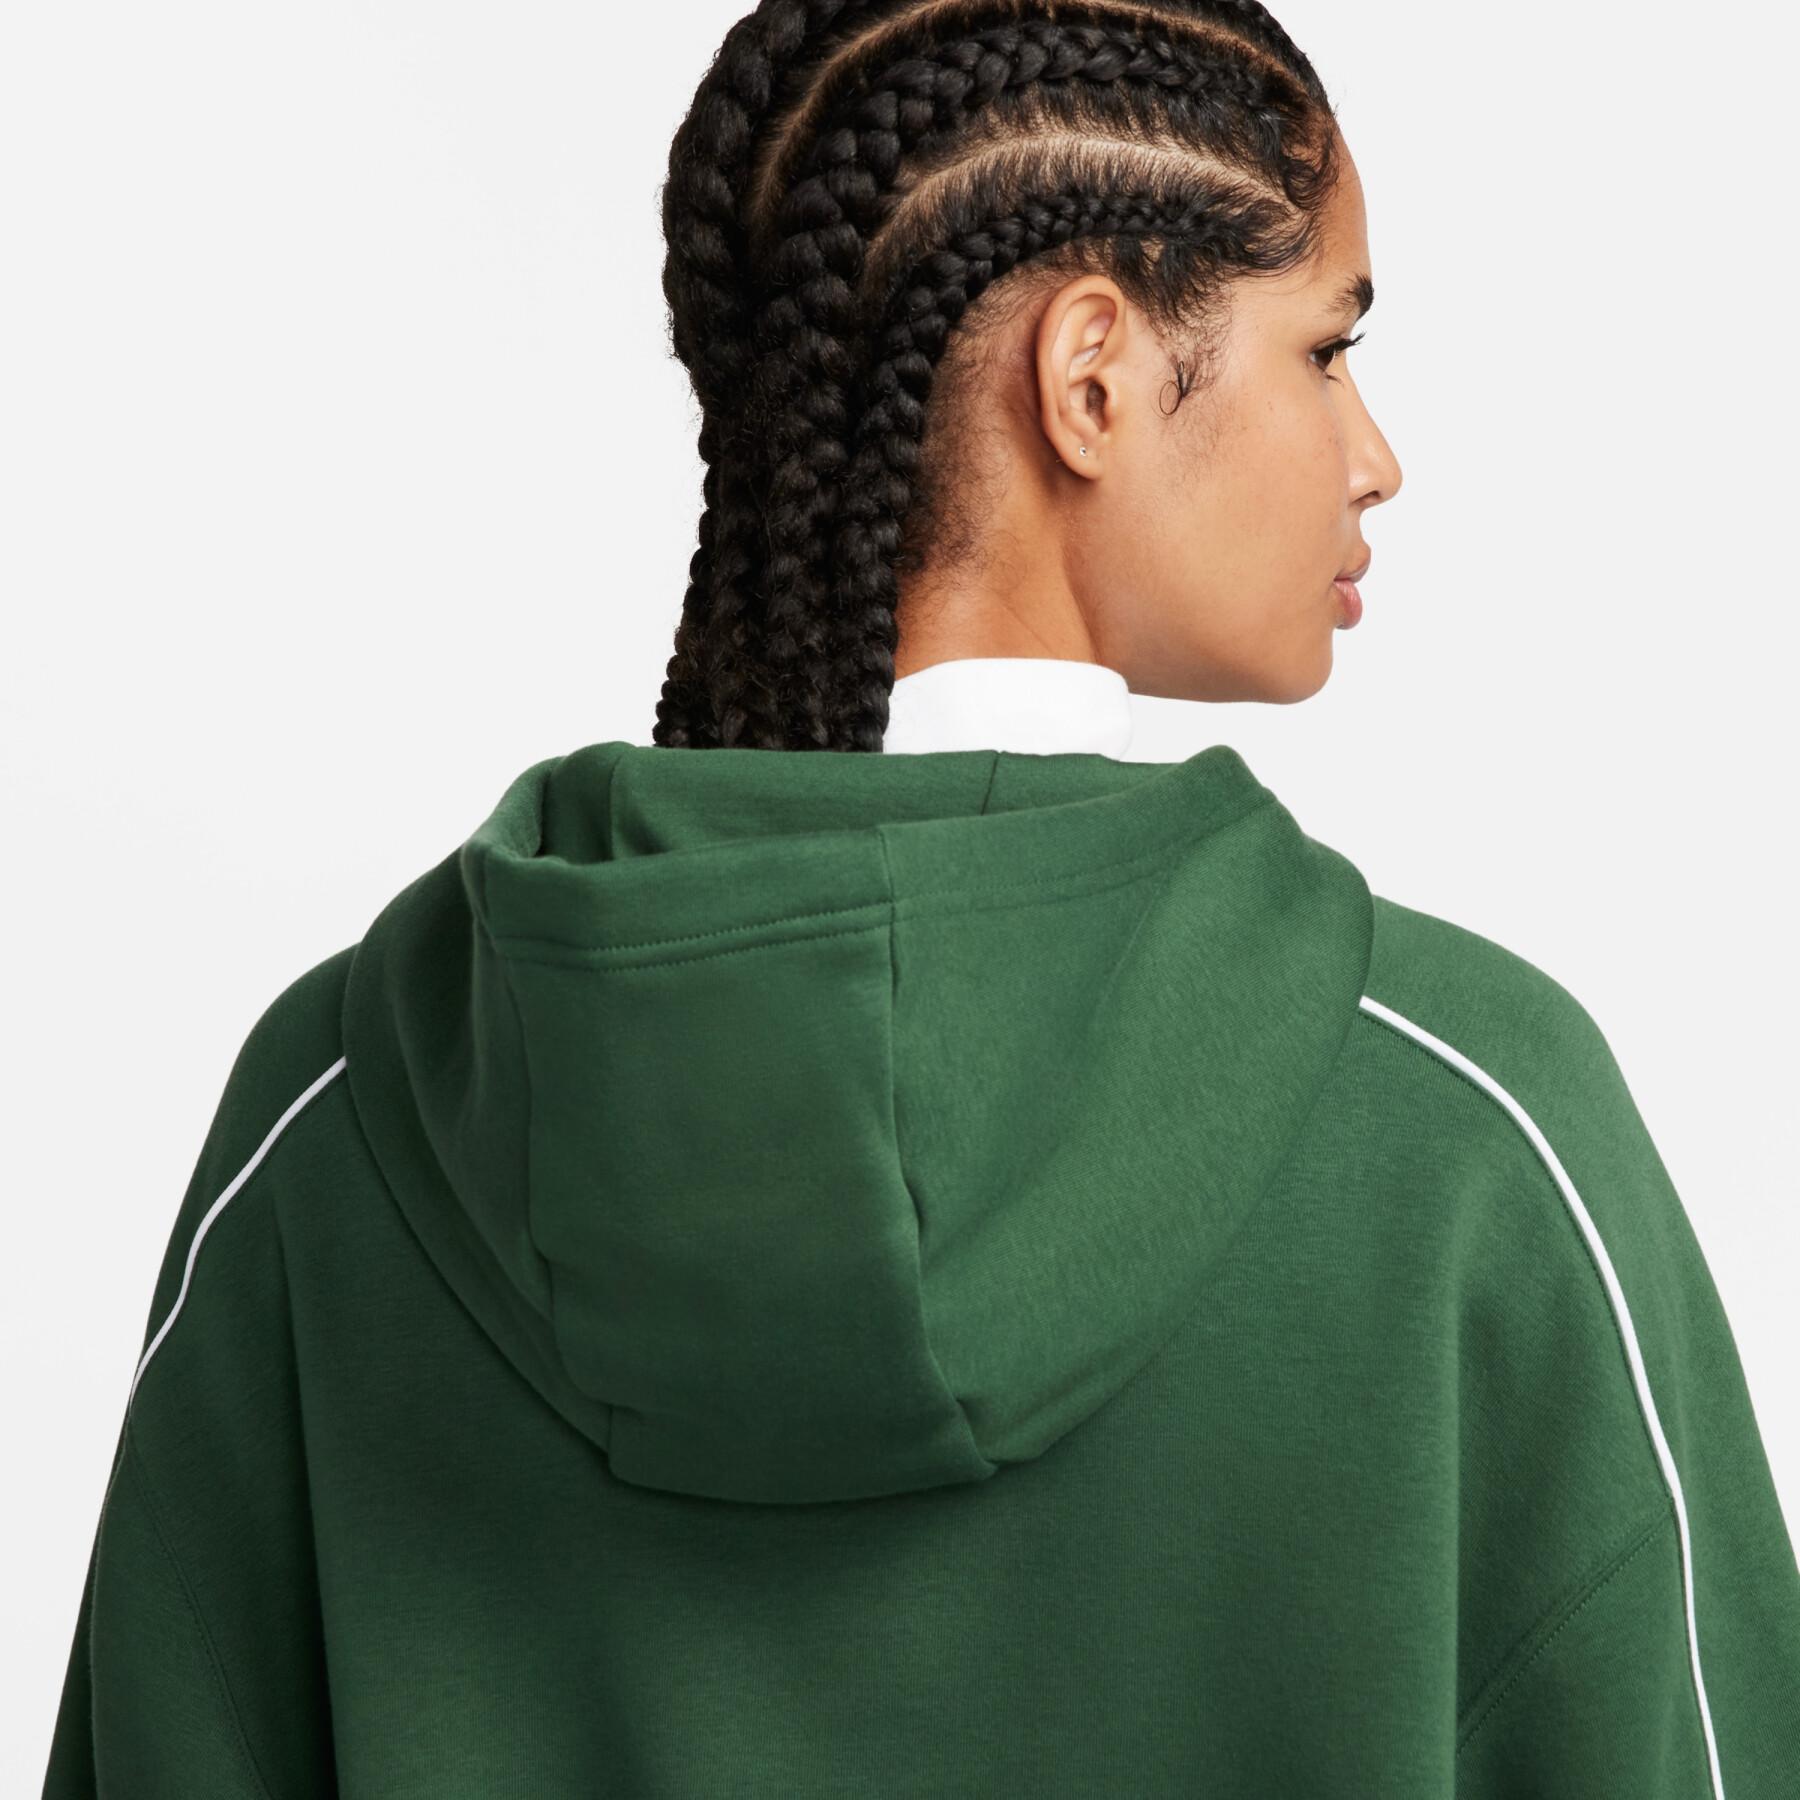 Sweatshirt com capuz de lã de grandes dimensões para mulher Nike